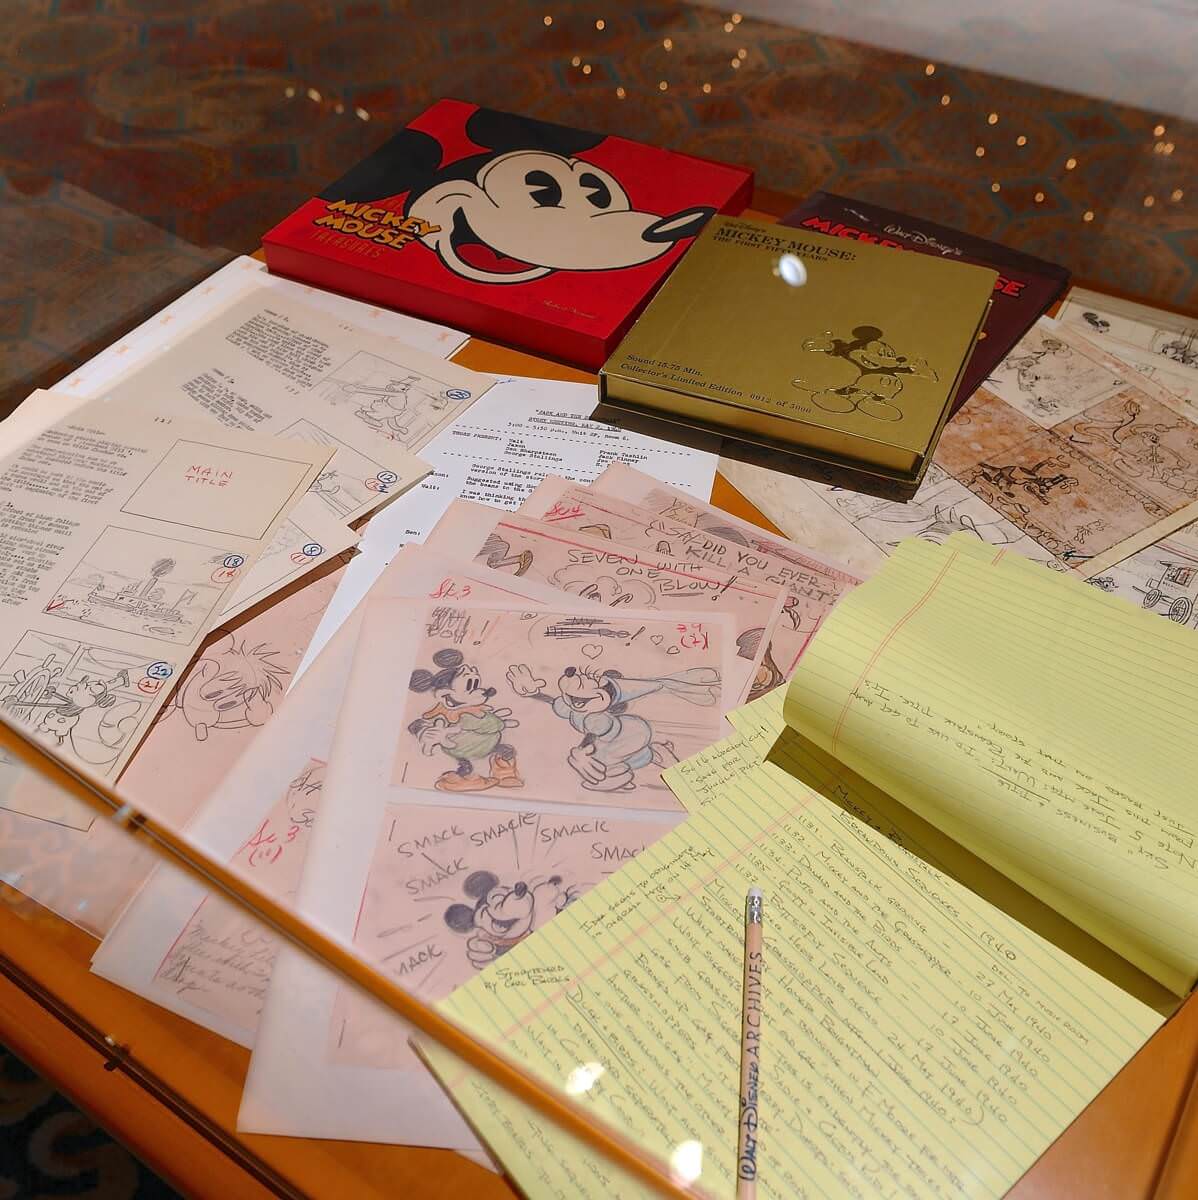 ウォルト・ディズニー・アーカイブス展 〜ミッキーマウスから続く、未来への物語〜